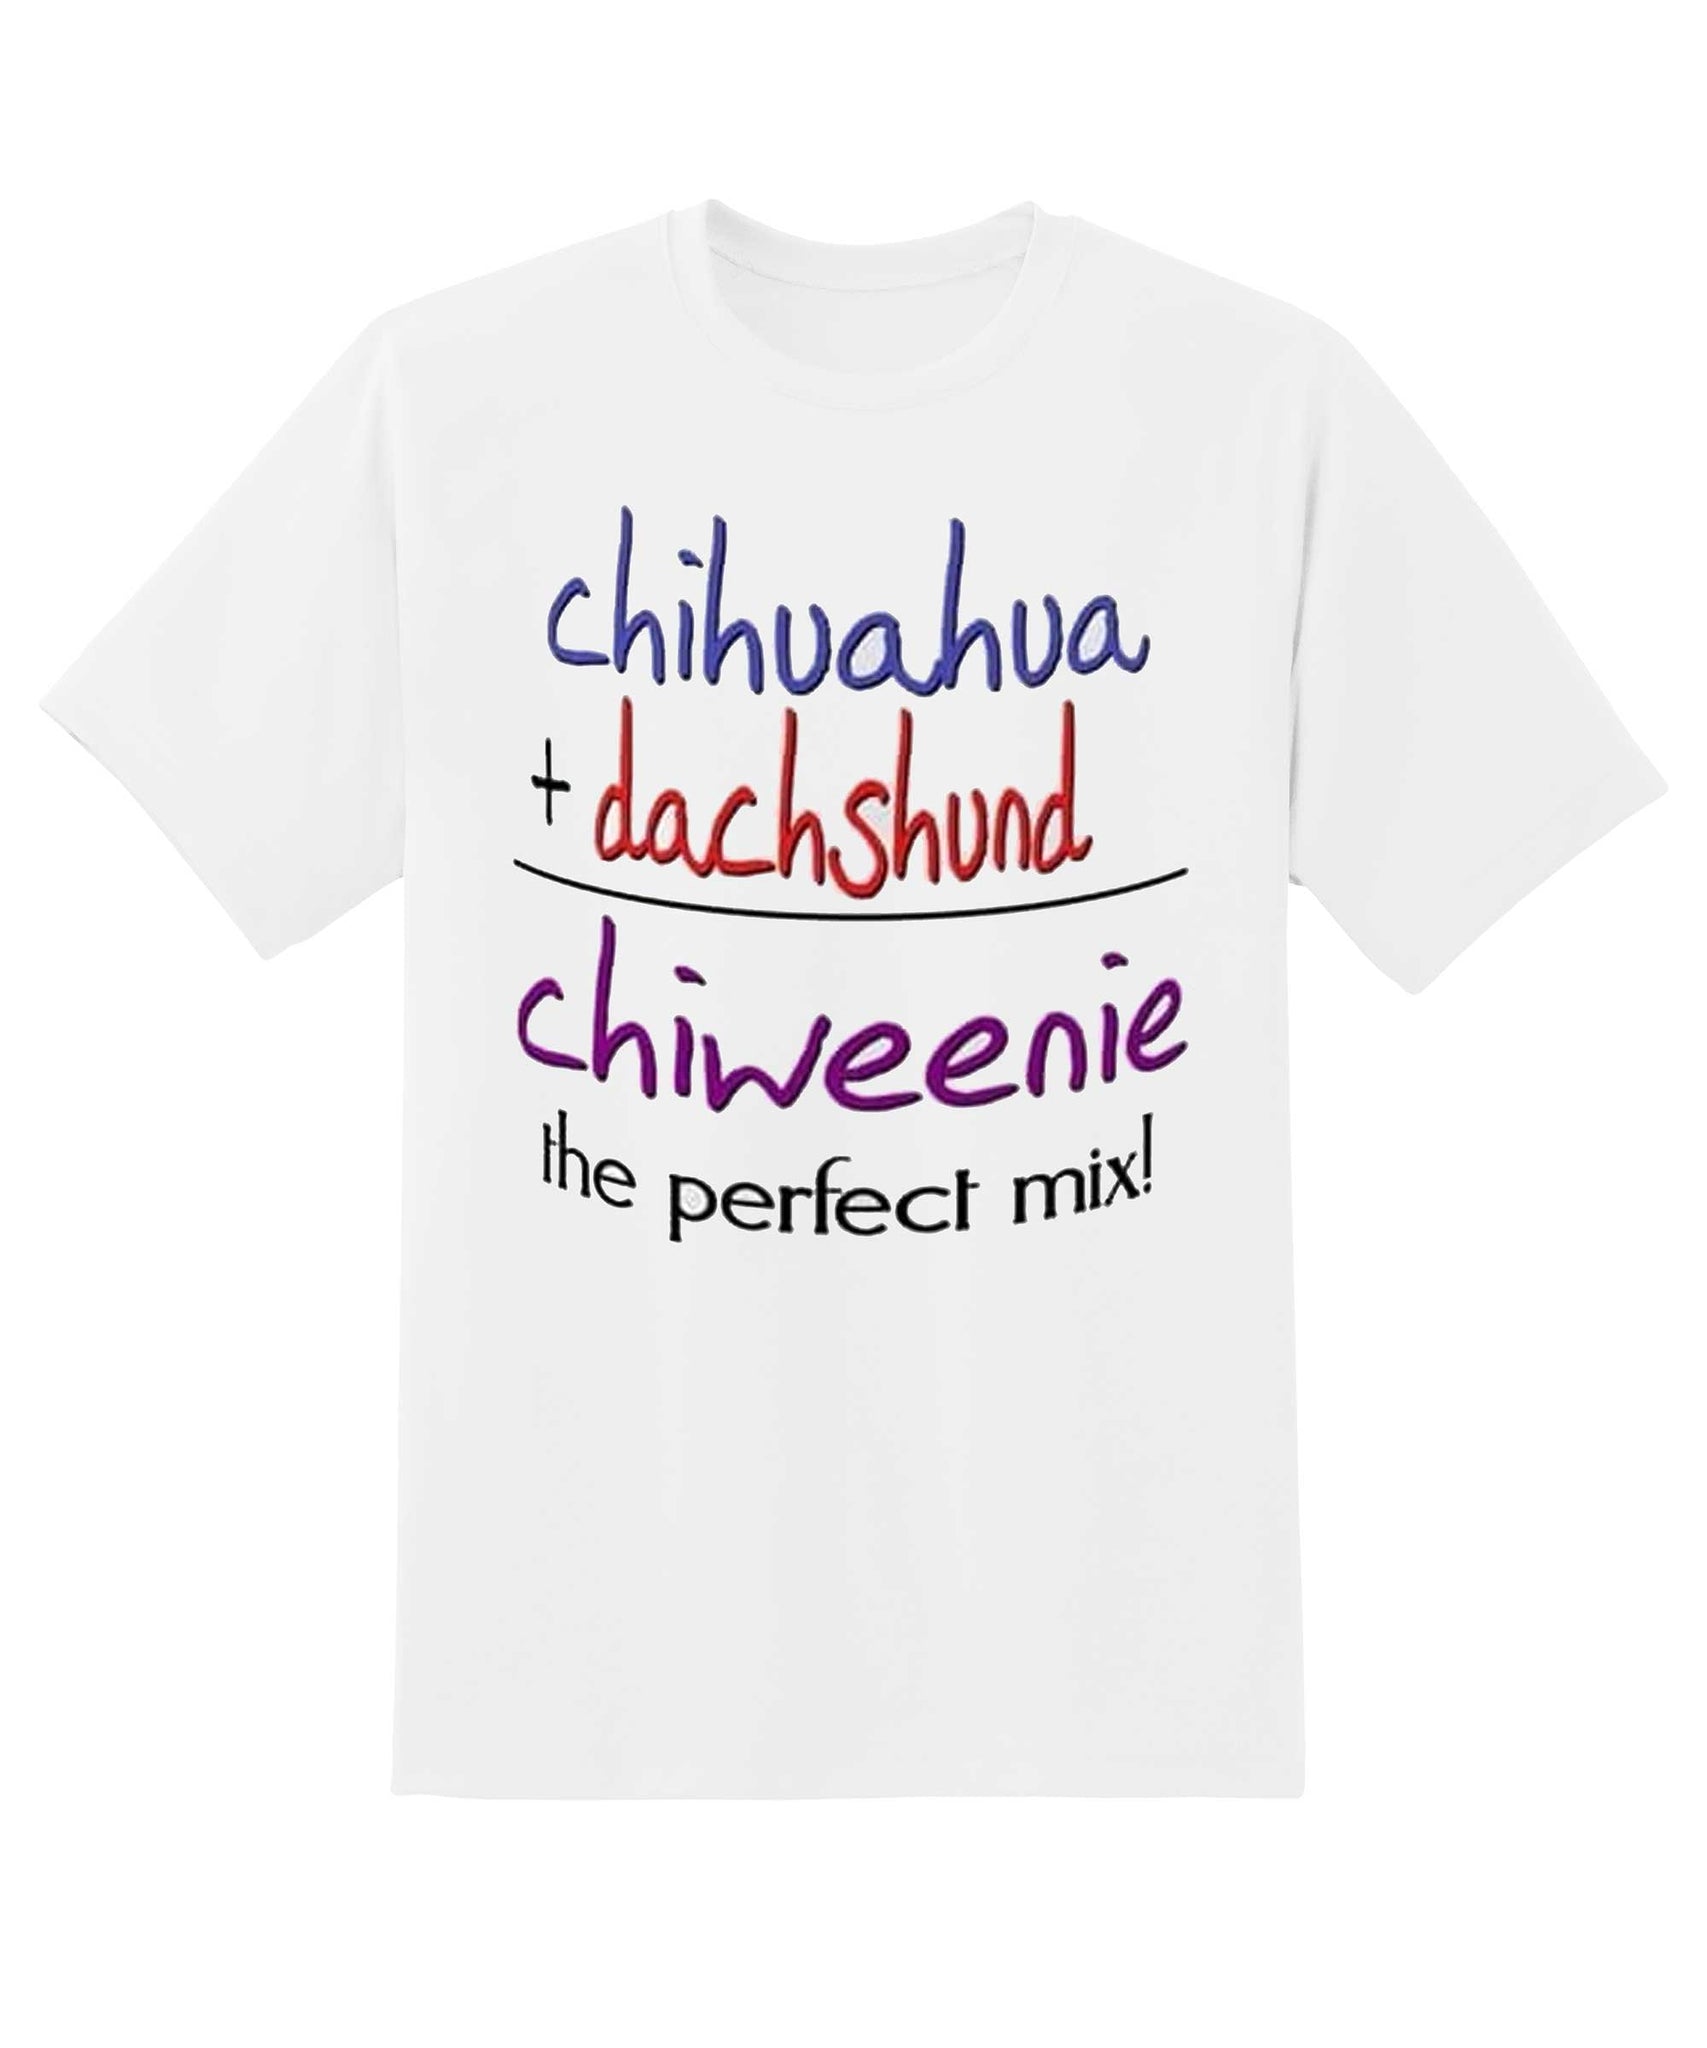 Skitongift-Chiweenie-Mix-Funny-Shirts-Hoodie-Sweater-Short-Sleeve-Casual-Shirt